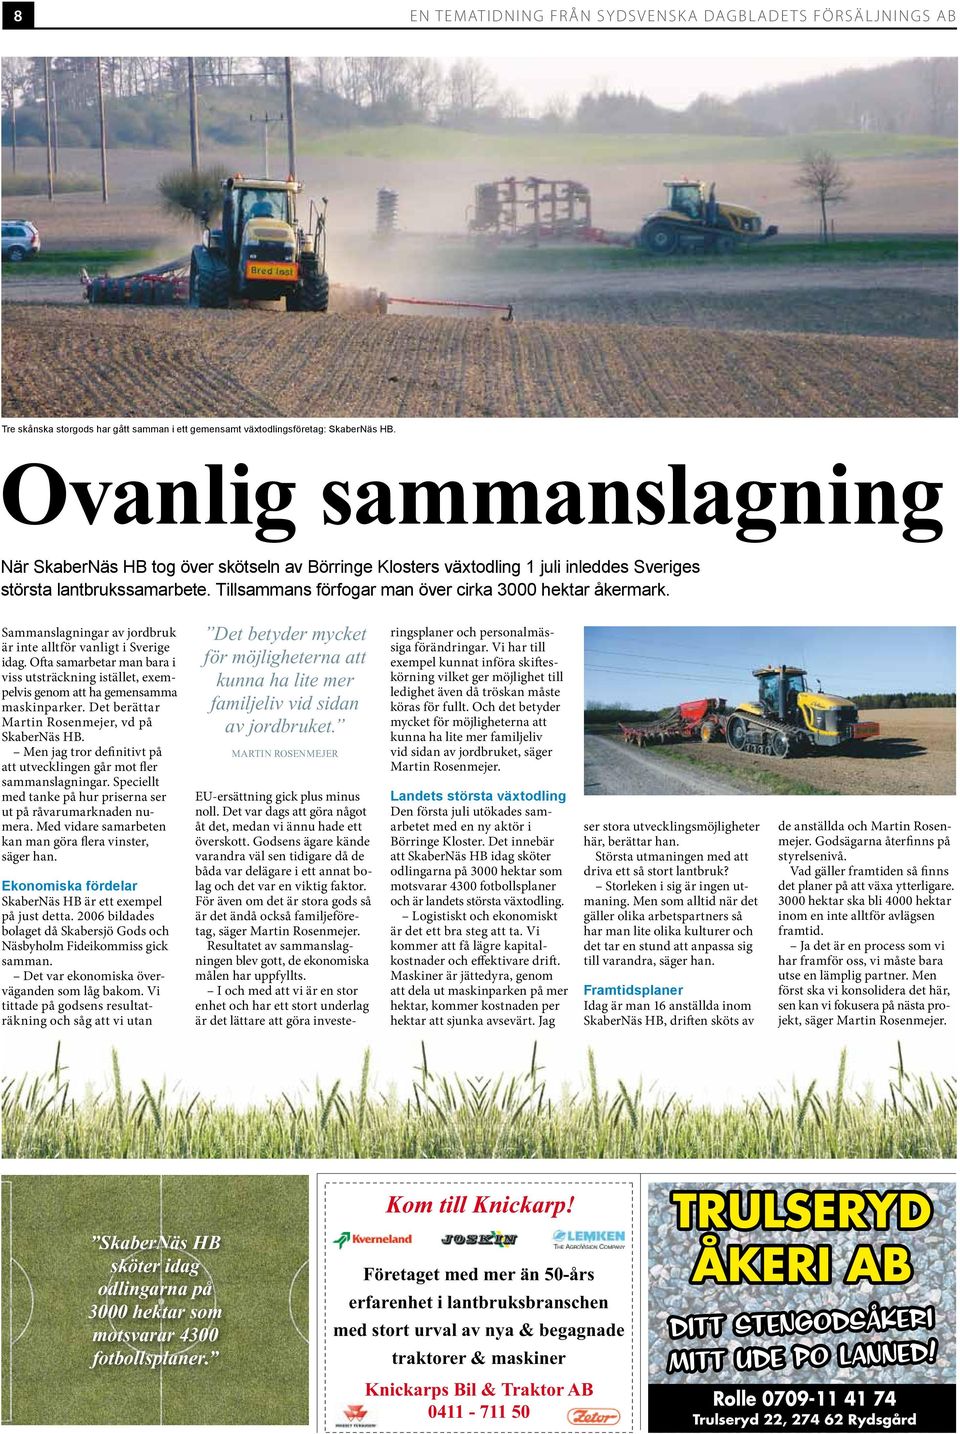 Sammanslagningar av jordbruk är inte alltför vanligt i Sverige idag. Ofta samarbetar man bara i viss utsträckning istället, exempelvis genom att ha gemensamma maskinparker.